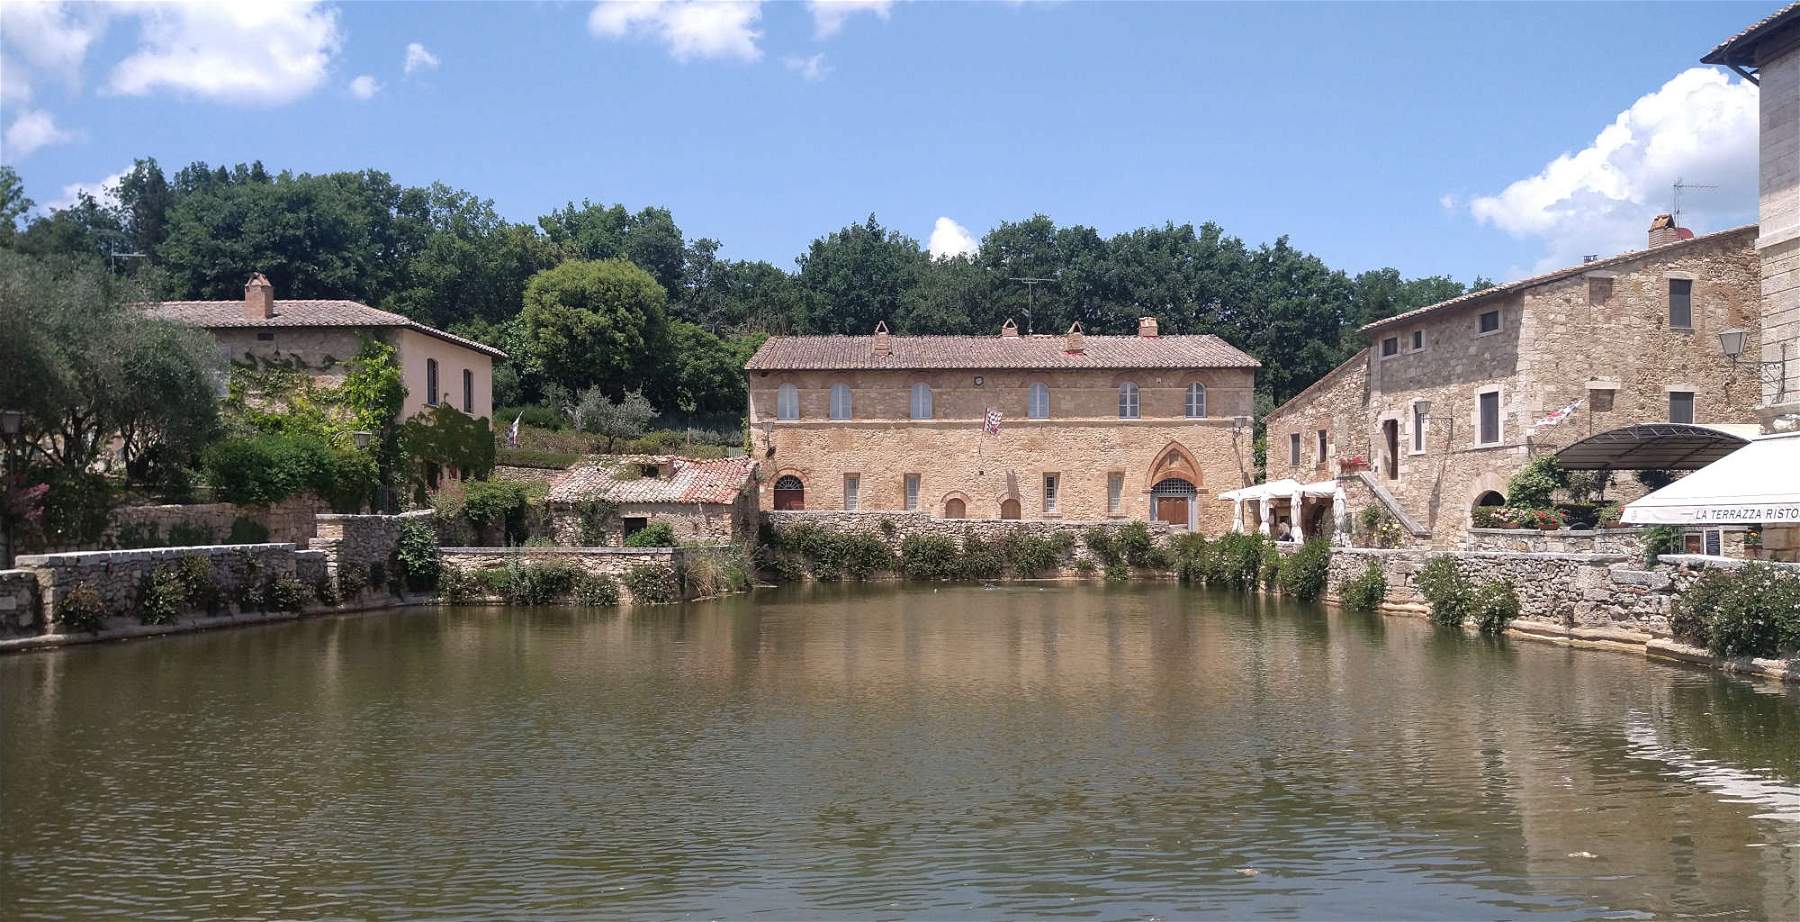 Bagno Vignoni, the village with a bath instead of a square